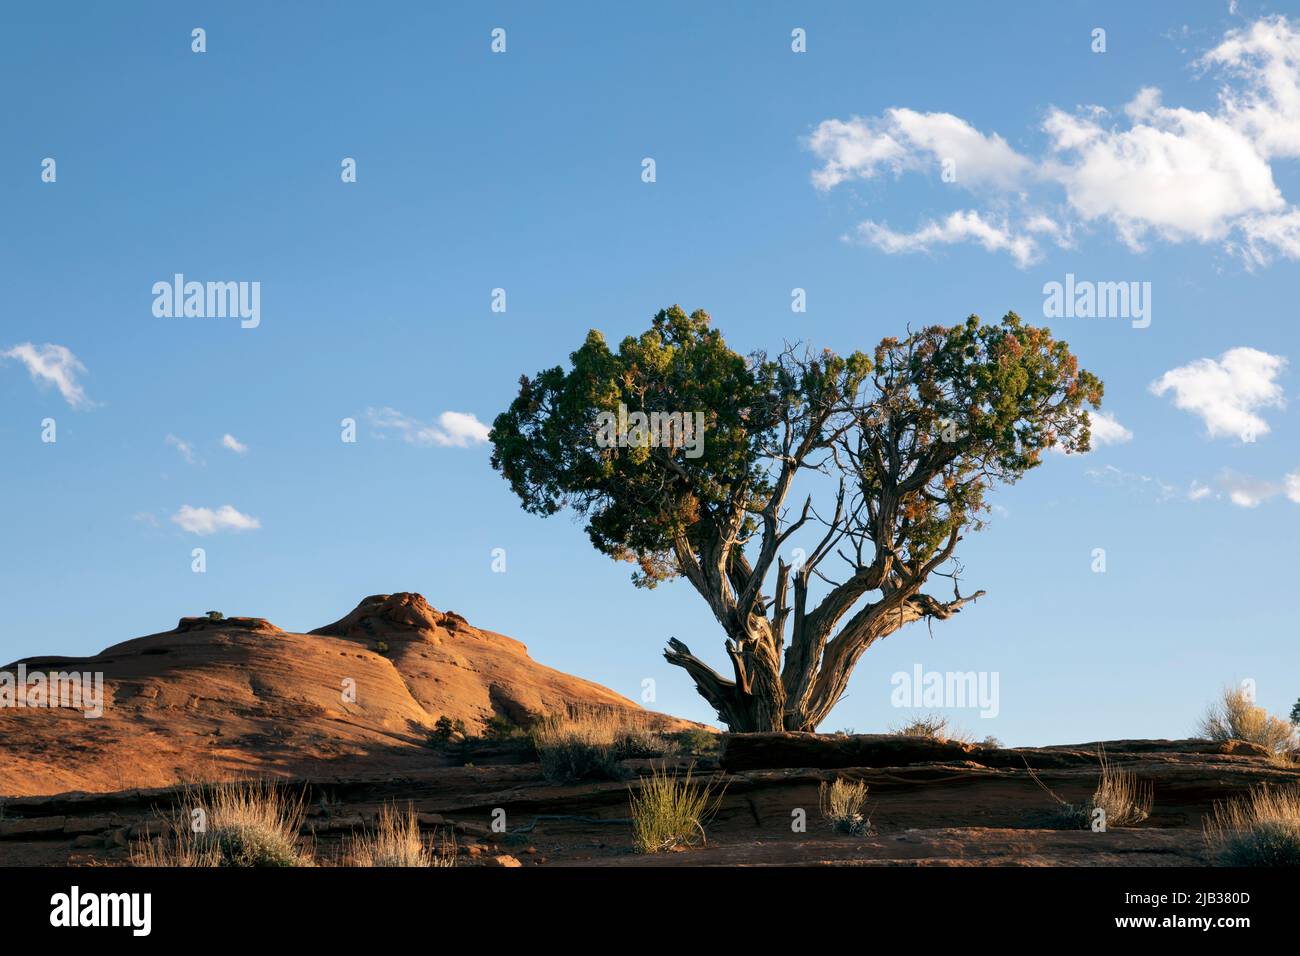 AZ00434-00....ARIZONA -Wacholderbaum und Sandsteinbutten im Monument Valley Navajo Tribal Park. Stockfoto